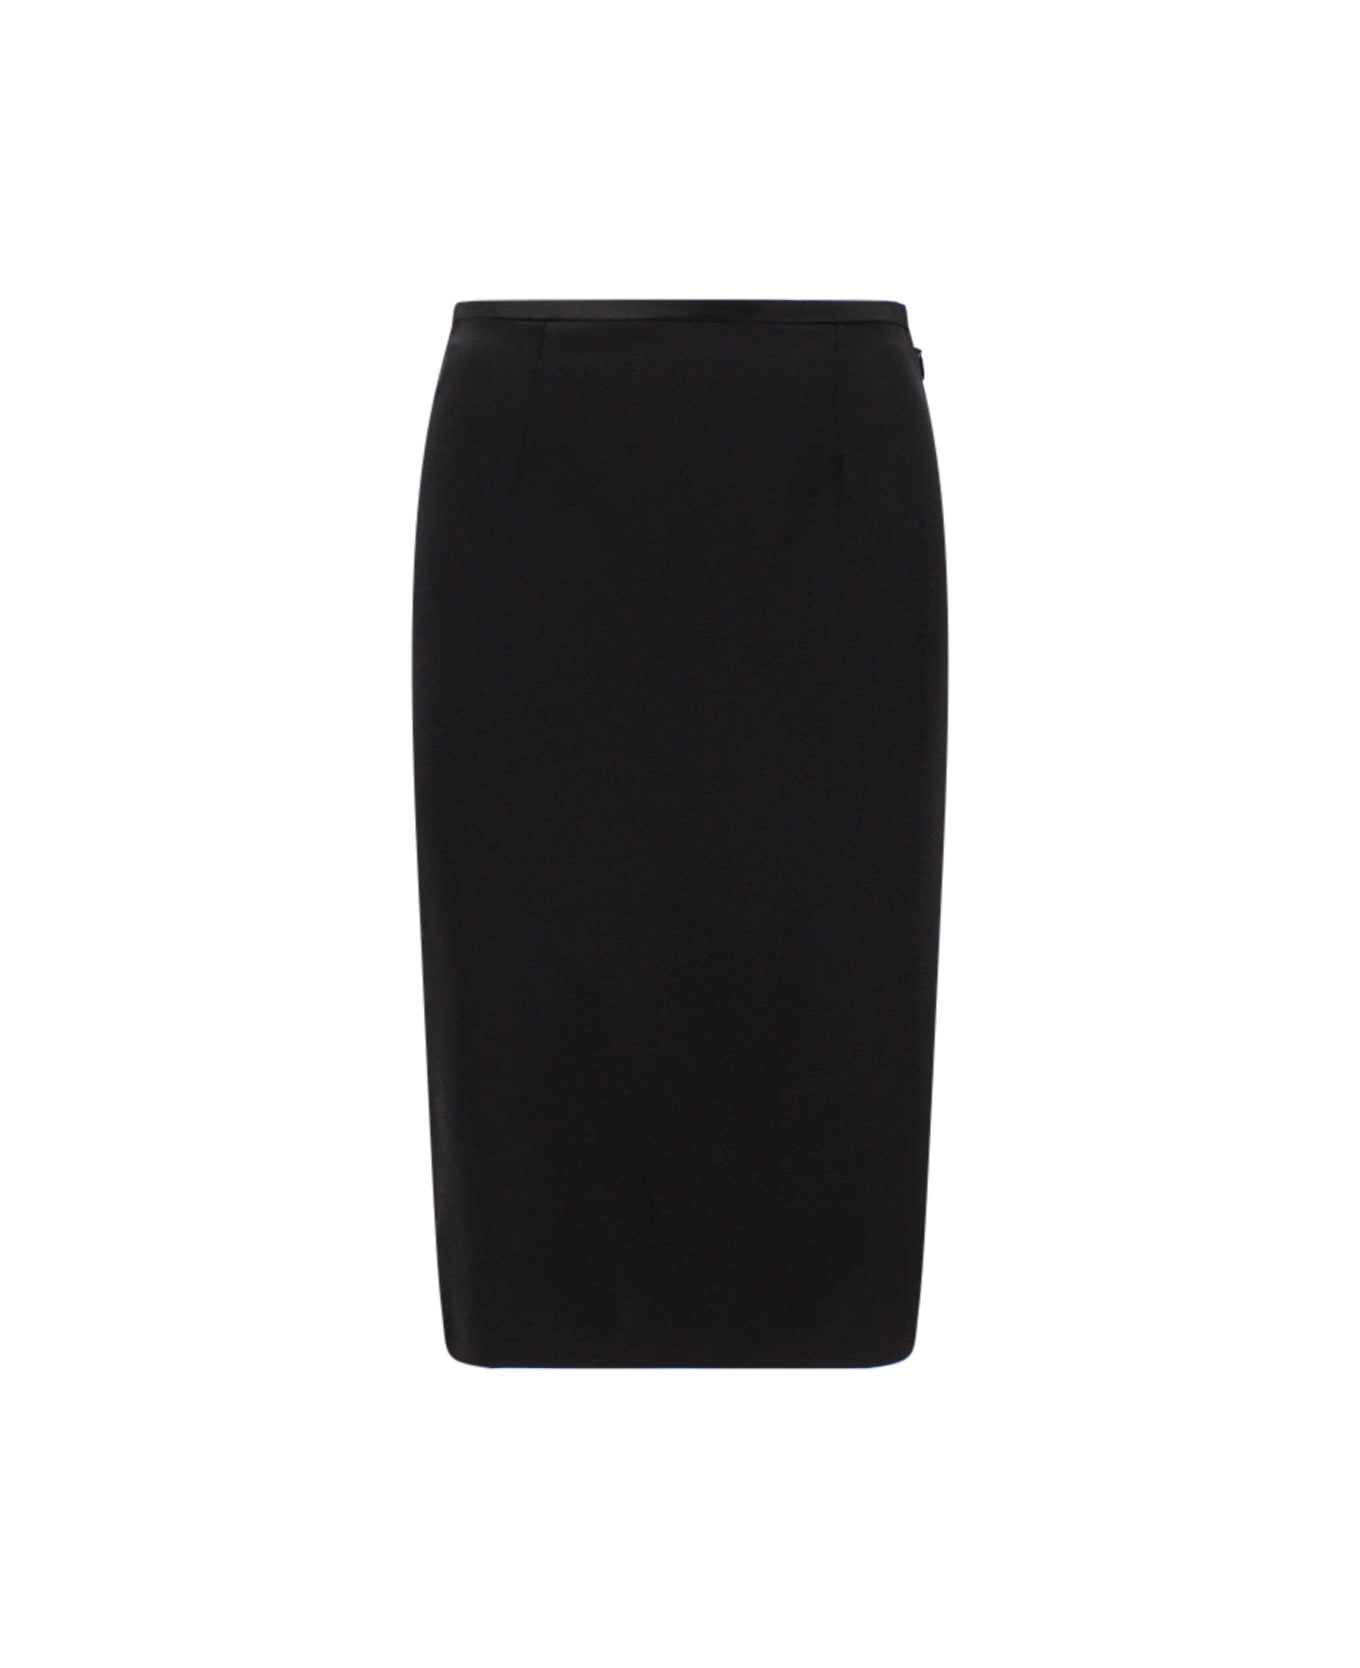 Saint Laurent Skirt - Black